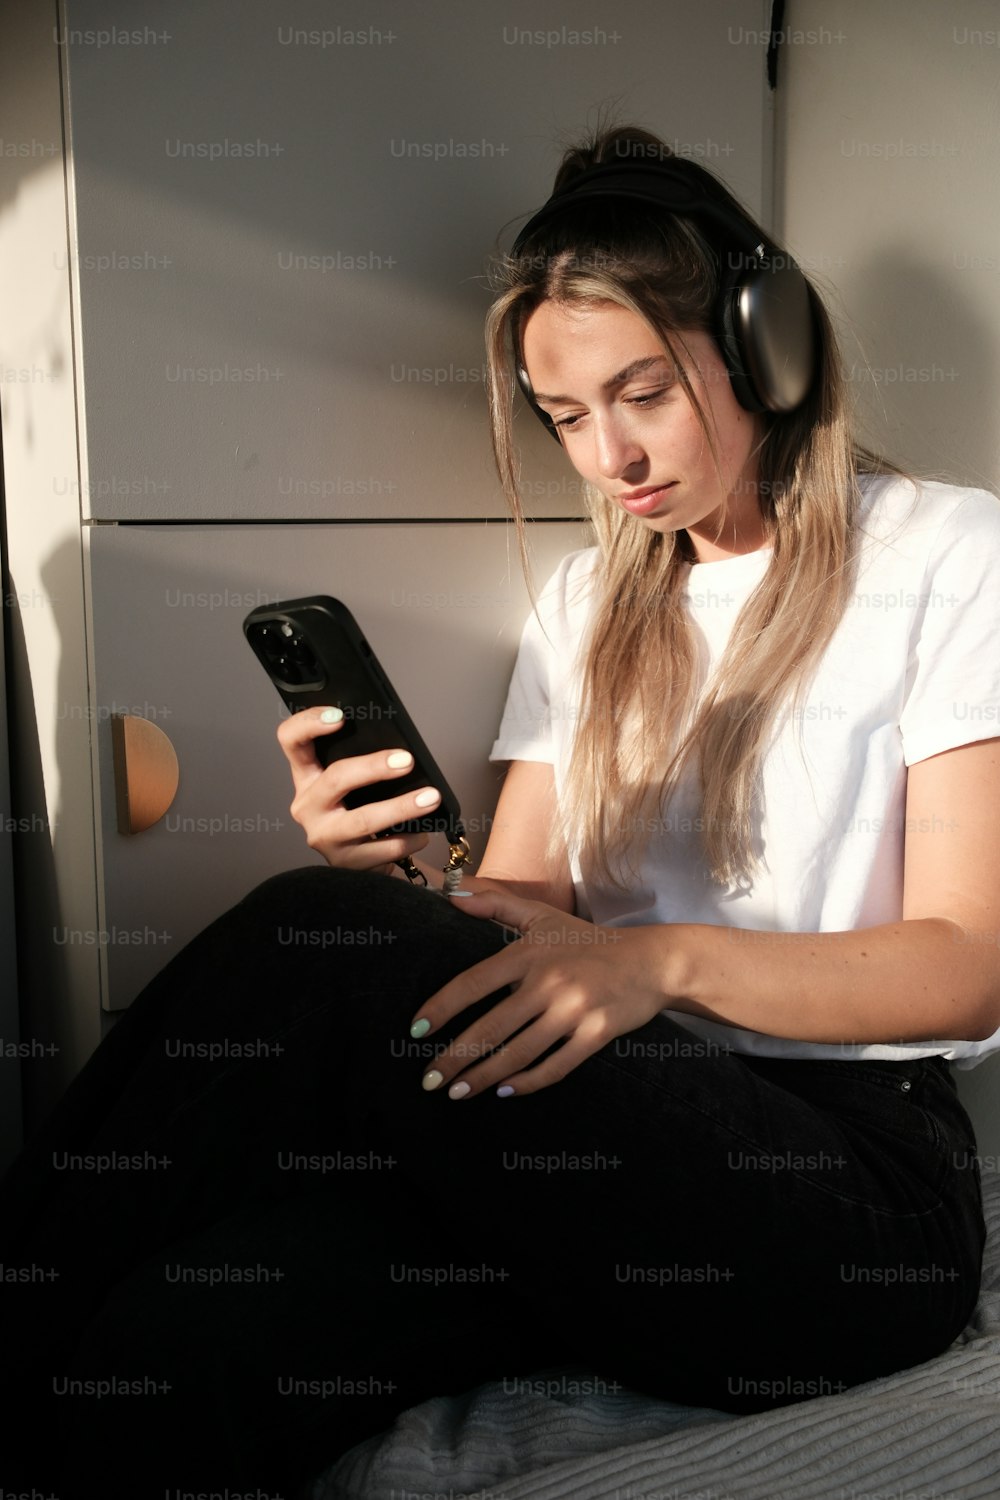 una donna seduta su un letto che usa un telefono cellulare